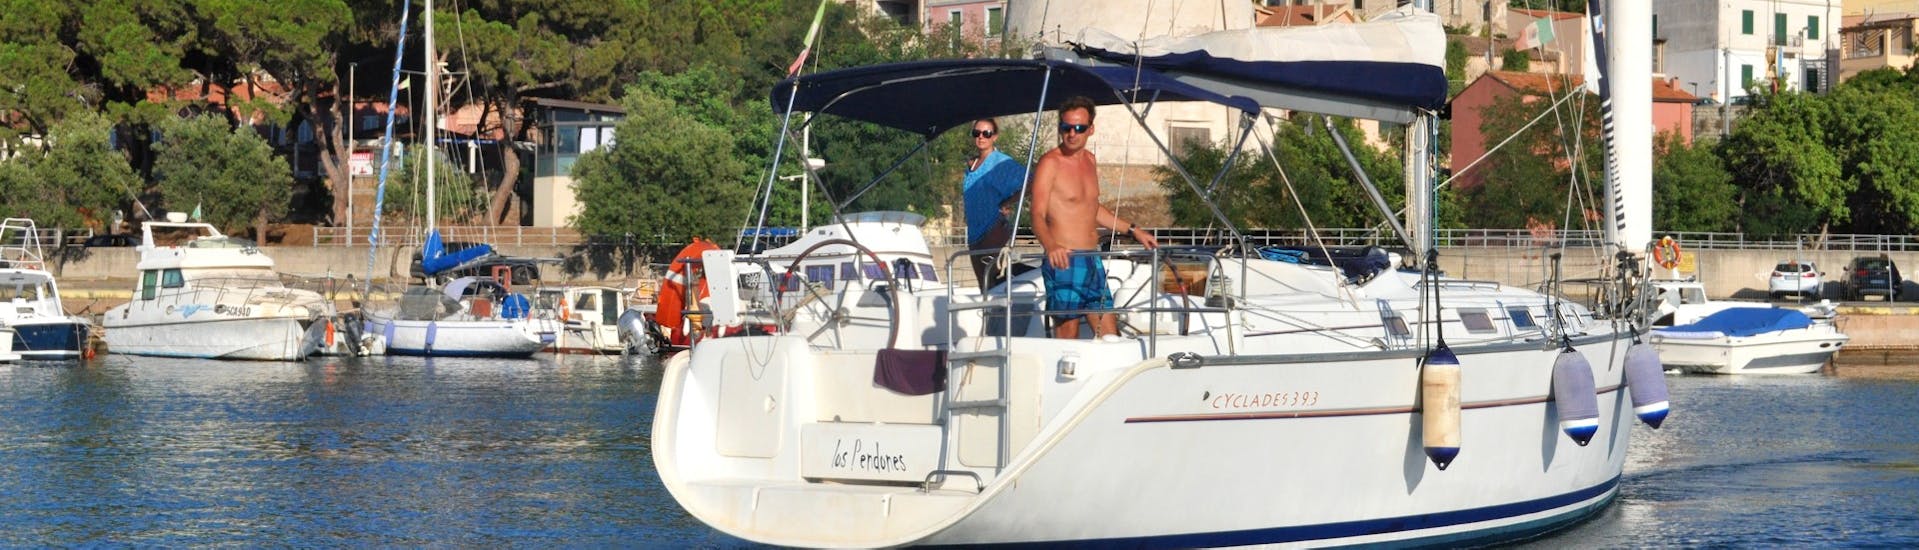 Zwei Personen auf dem Segelboot Cyclades während der Private Segelbootstour zum Golf von Orosei ab Arbatax mit Velamare Arbatax.